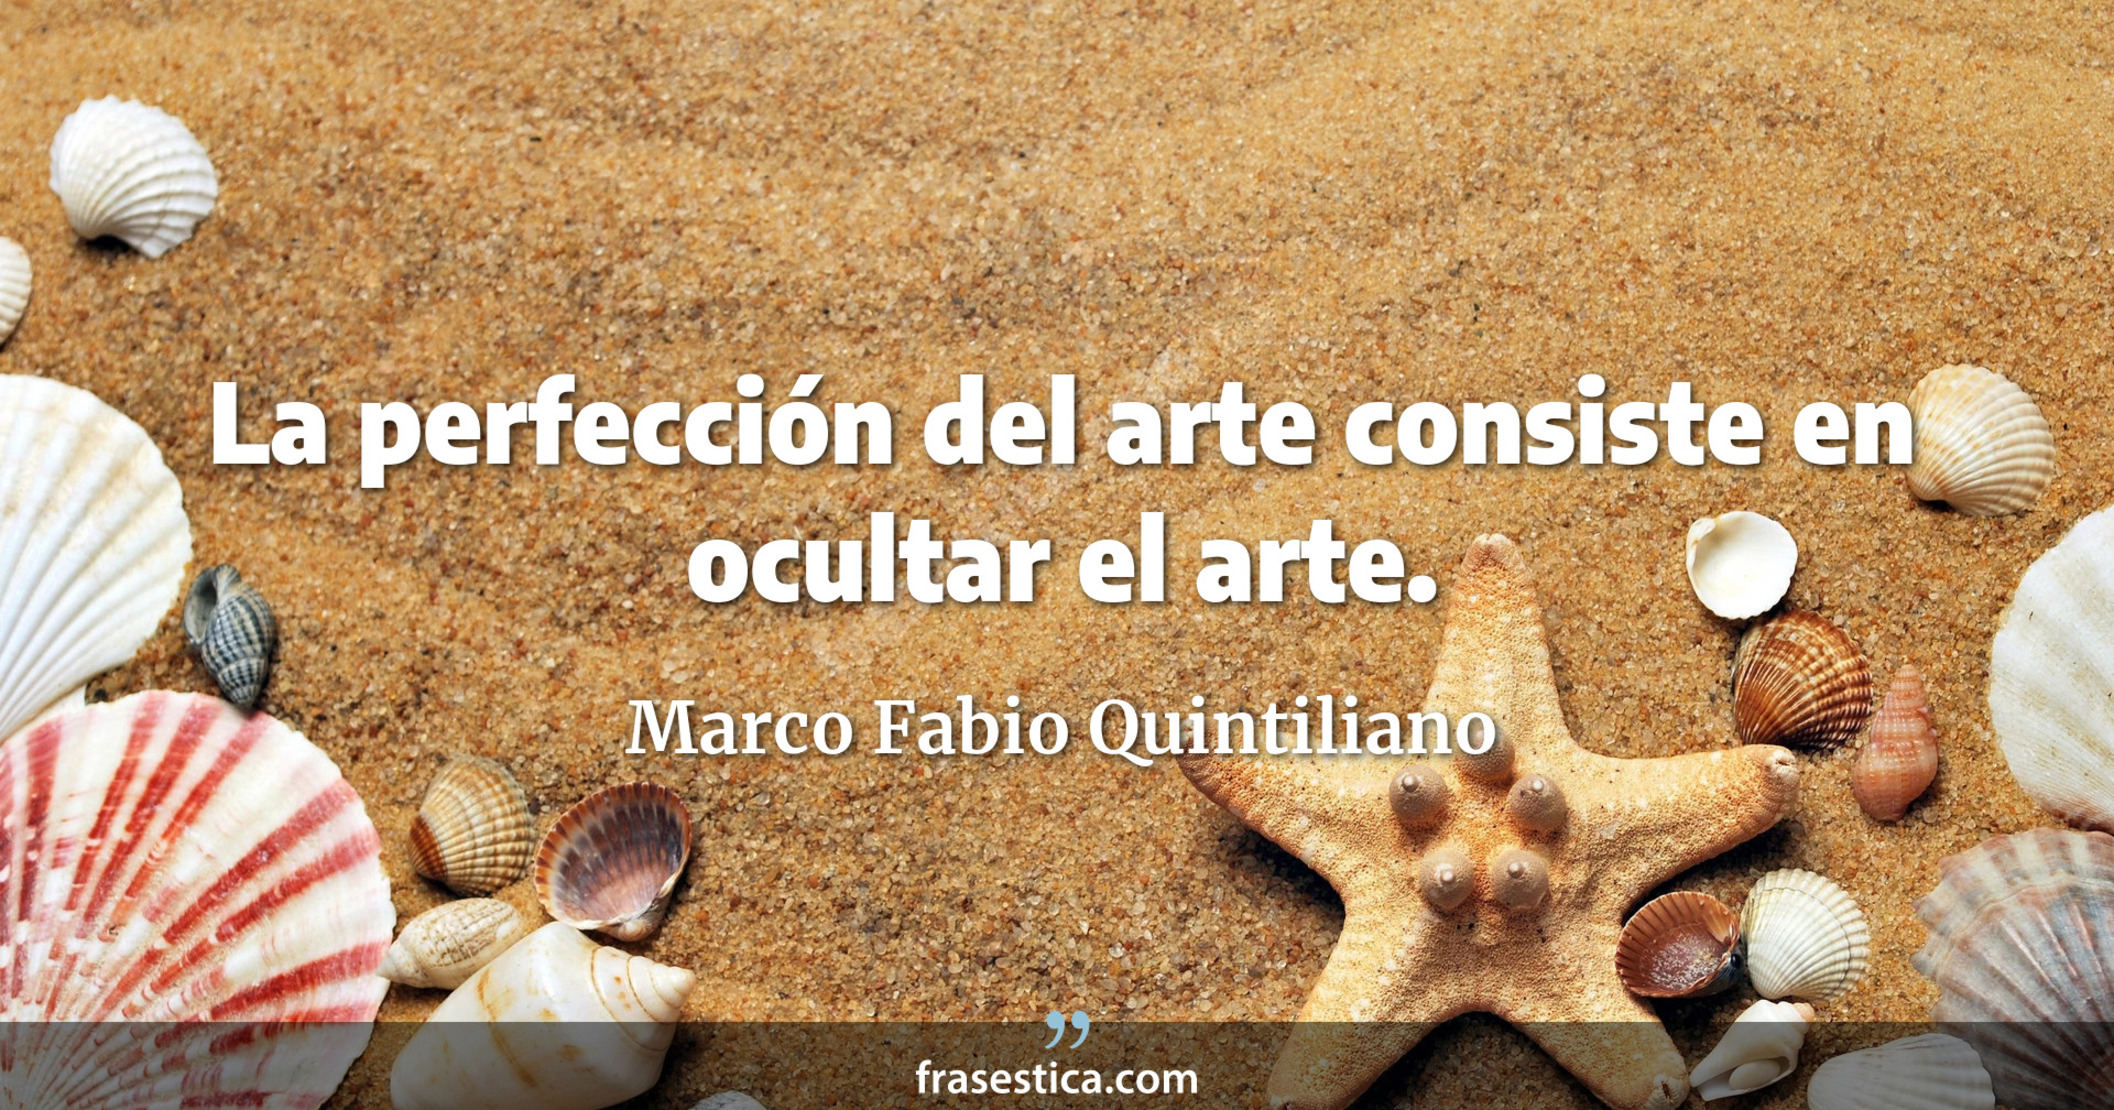 La perfección del arte consiste en ocultar el arte. - Marco Fabio Quintiliano